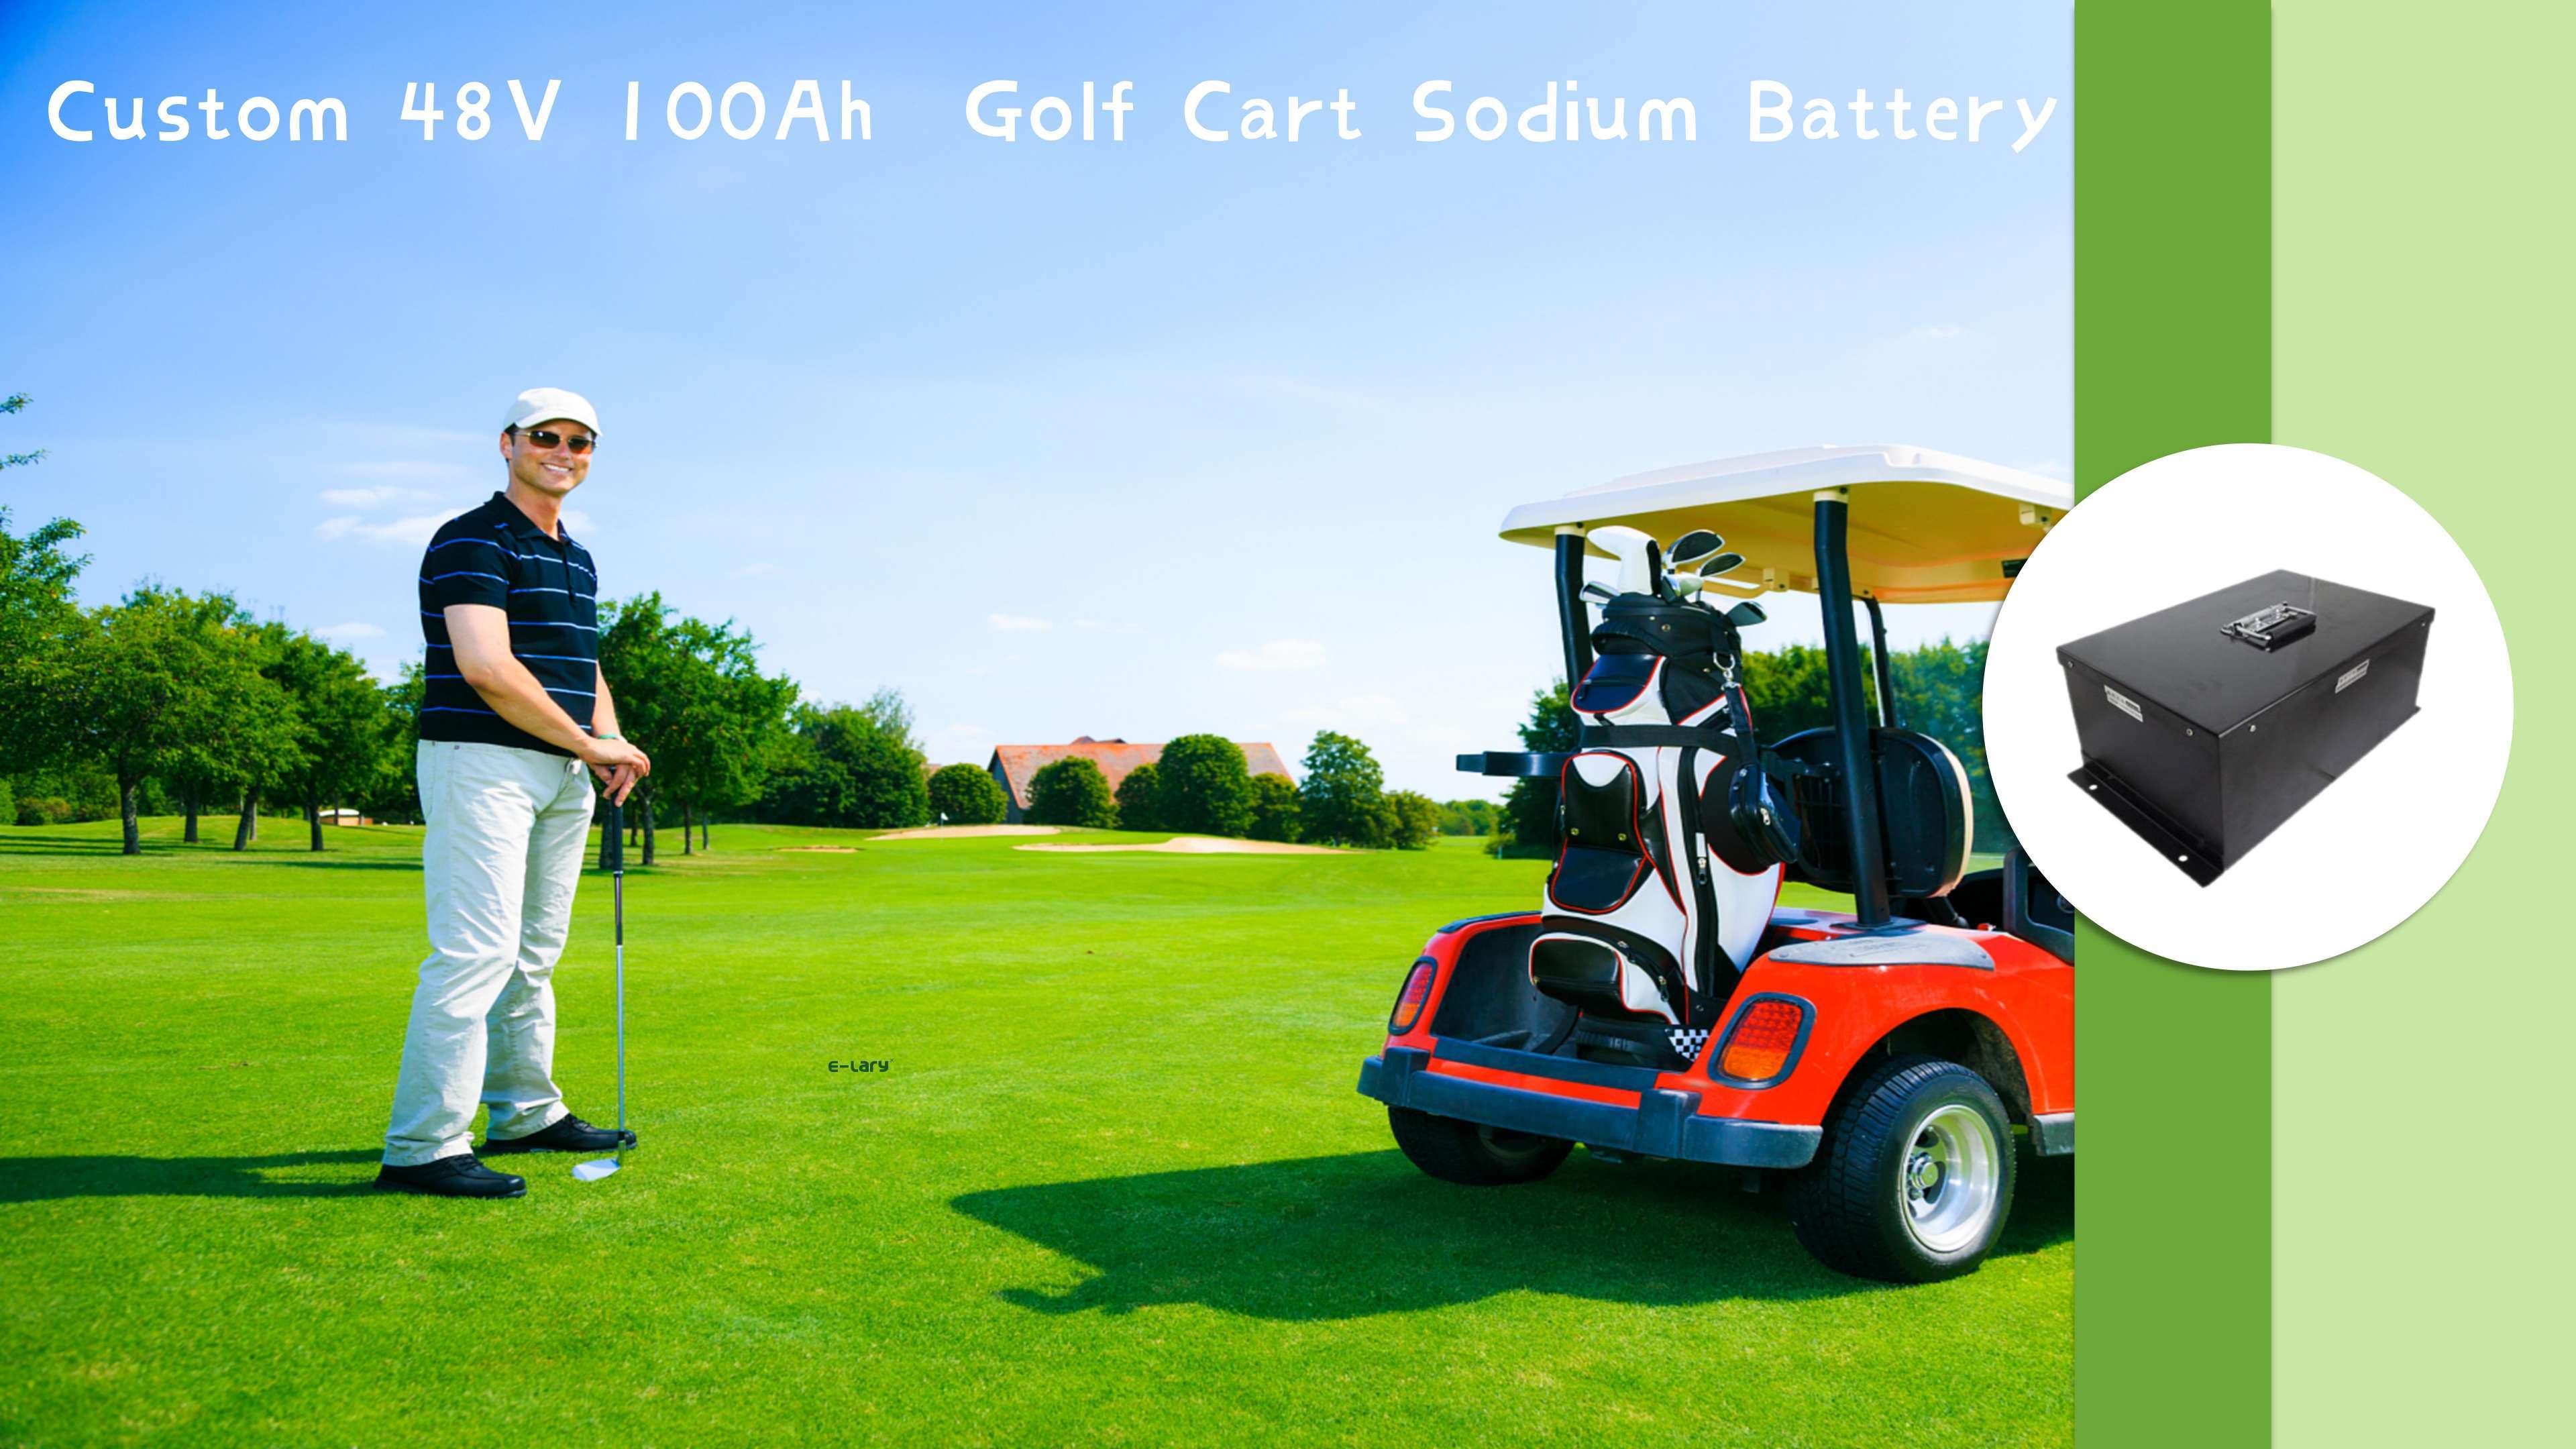 Batería de litio para carrito de golf E-lary 48V 100Ah